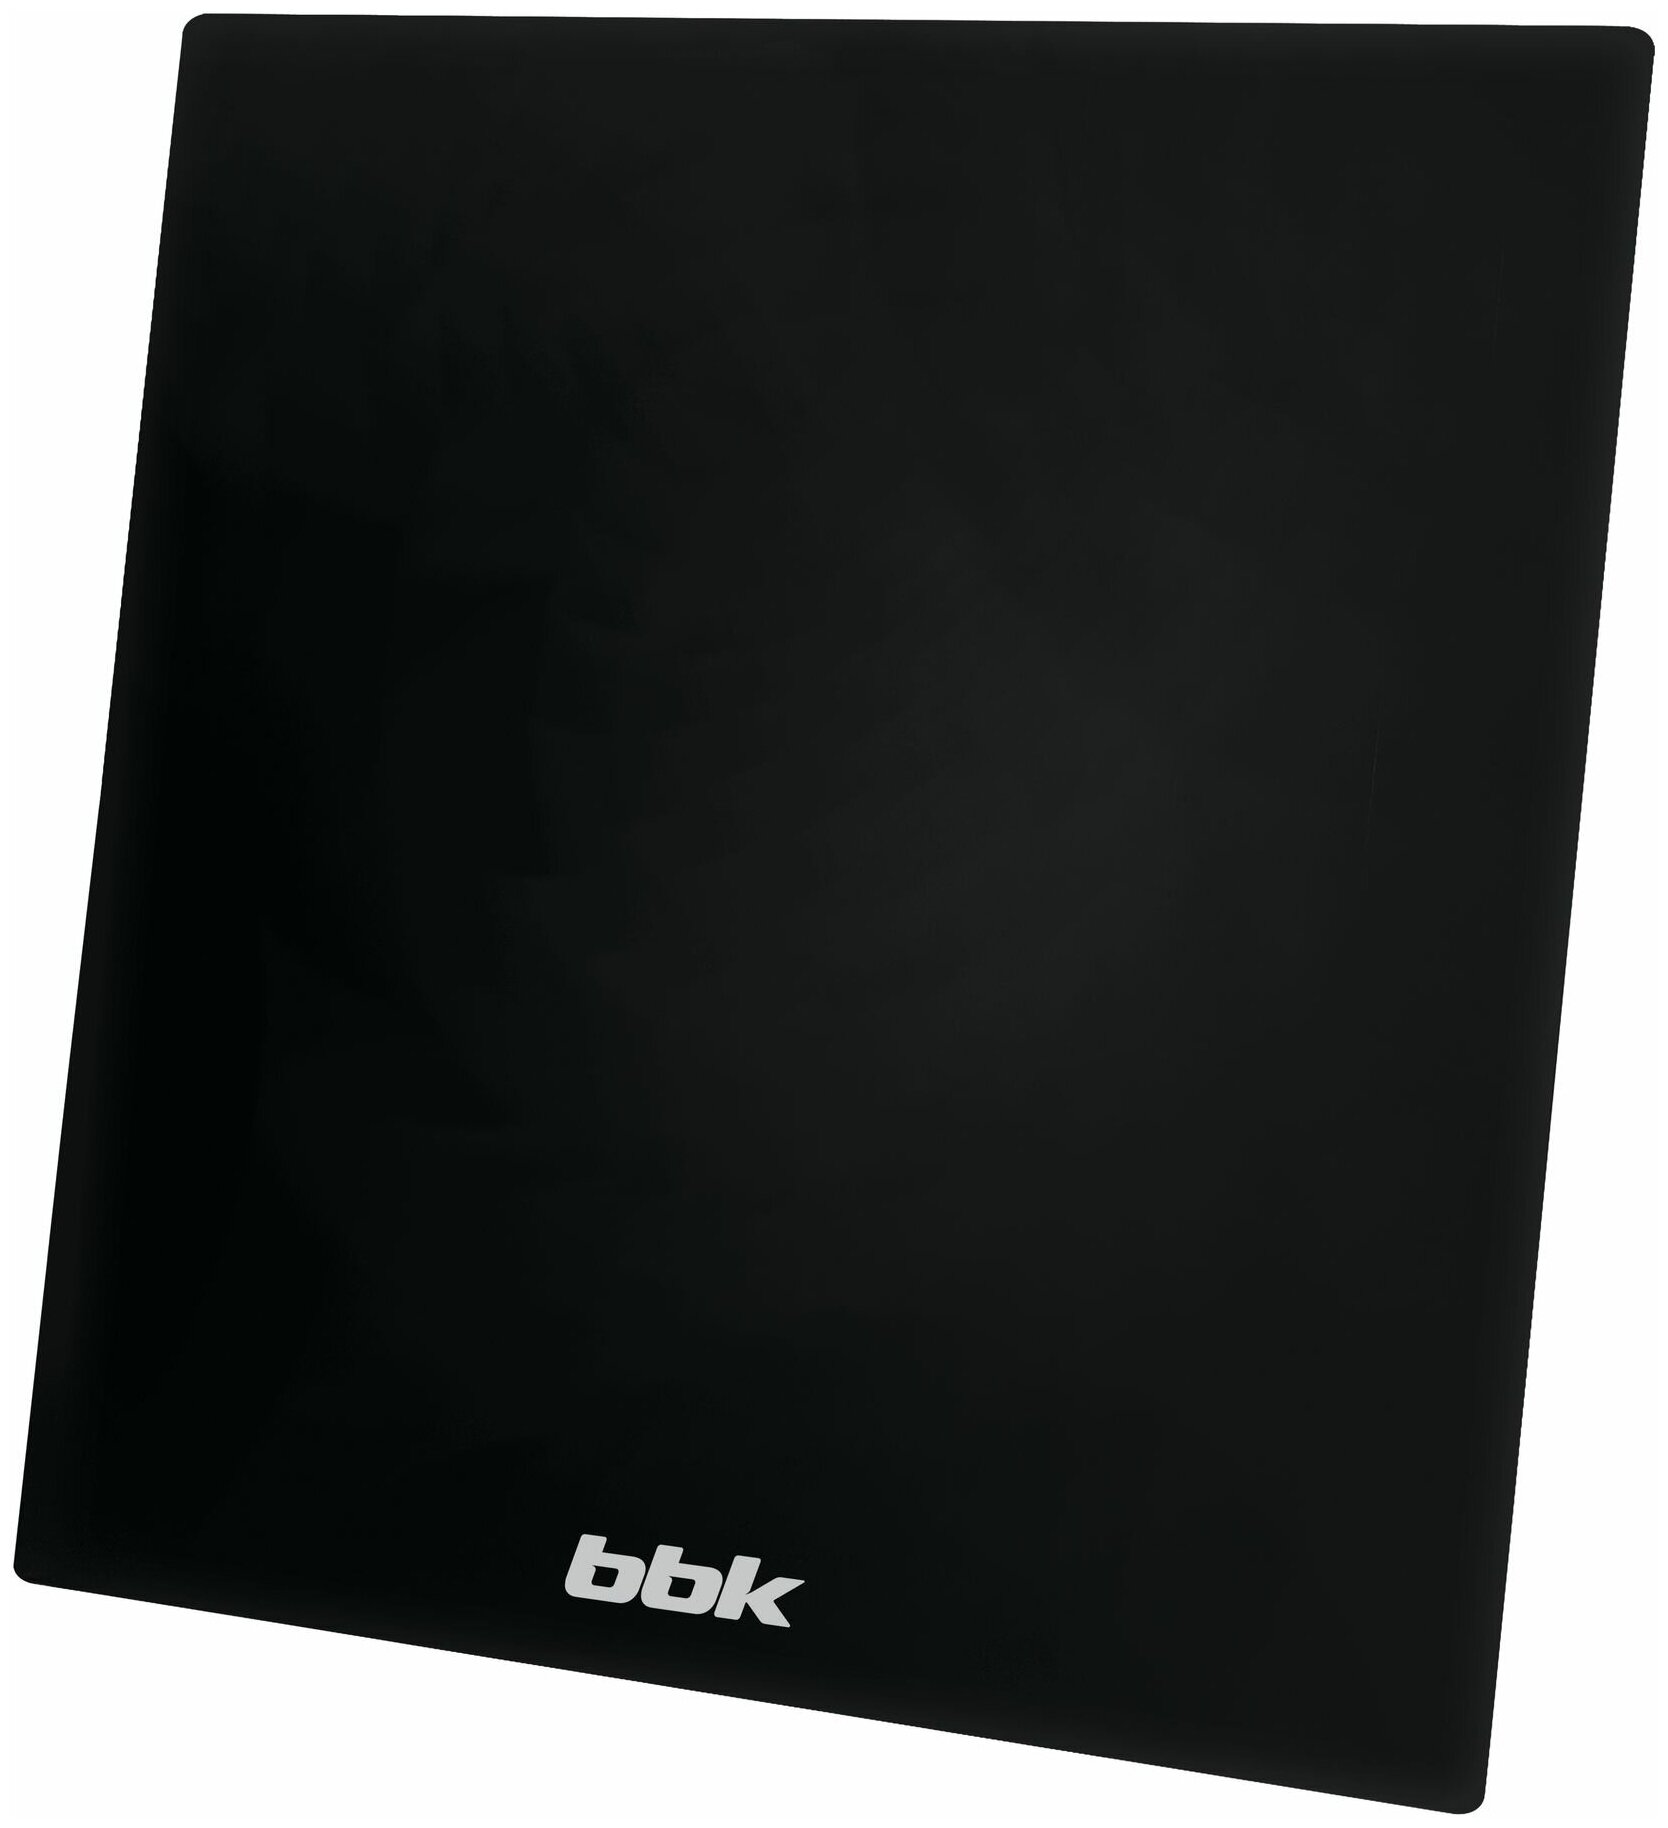 Универсальная цифровая DVB-T2 антенна BBK DA38 черный коэффициент усиления 28дБ